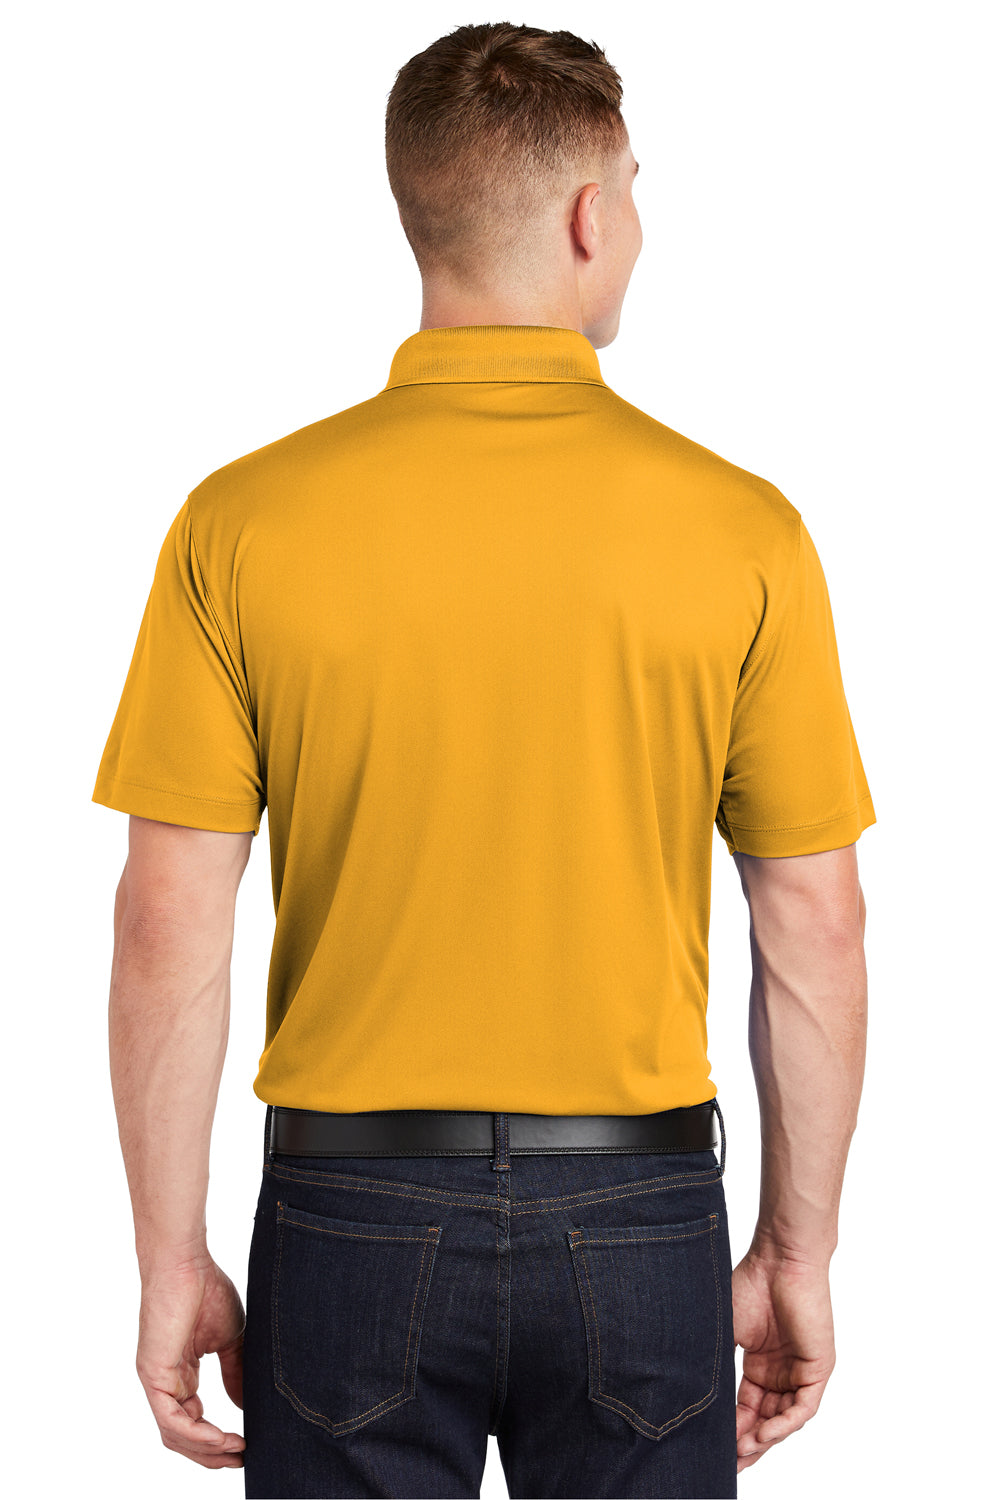 Sport-Tek ST650 Mens Sport-Wick Moisture Wicking Short Sleeve Polo Shirt Gold Back